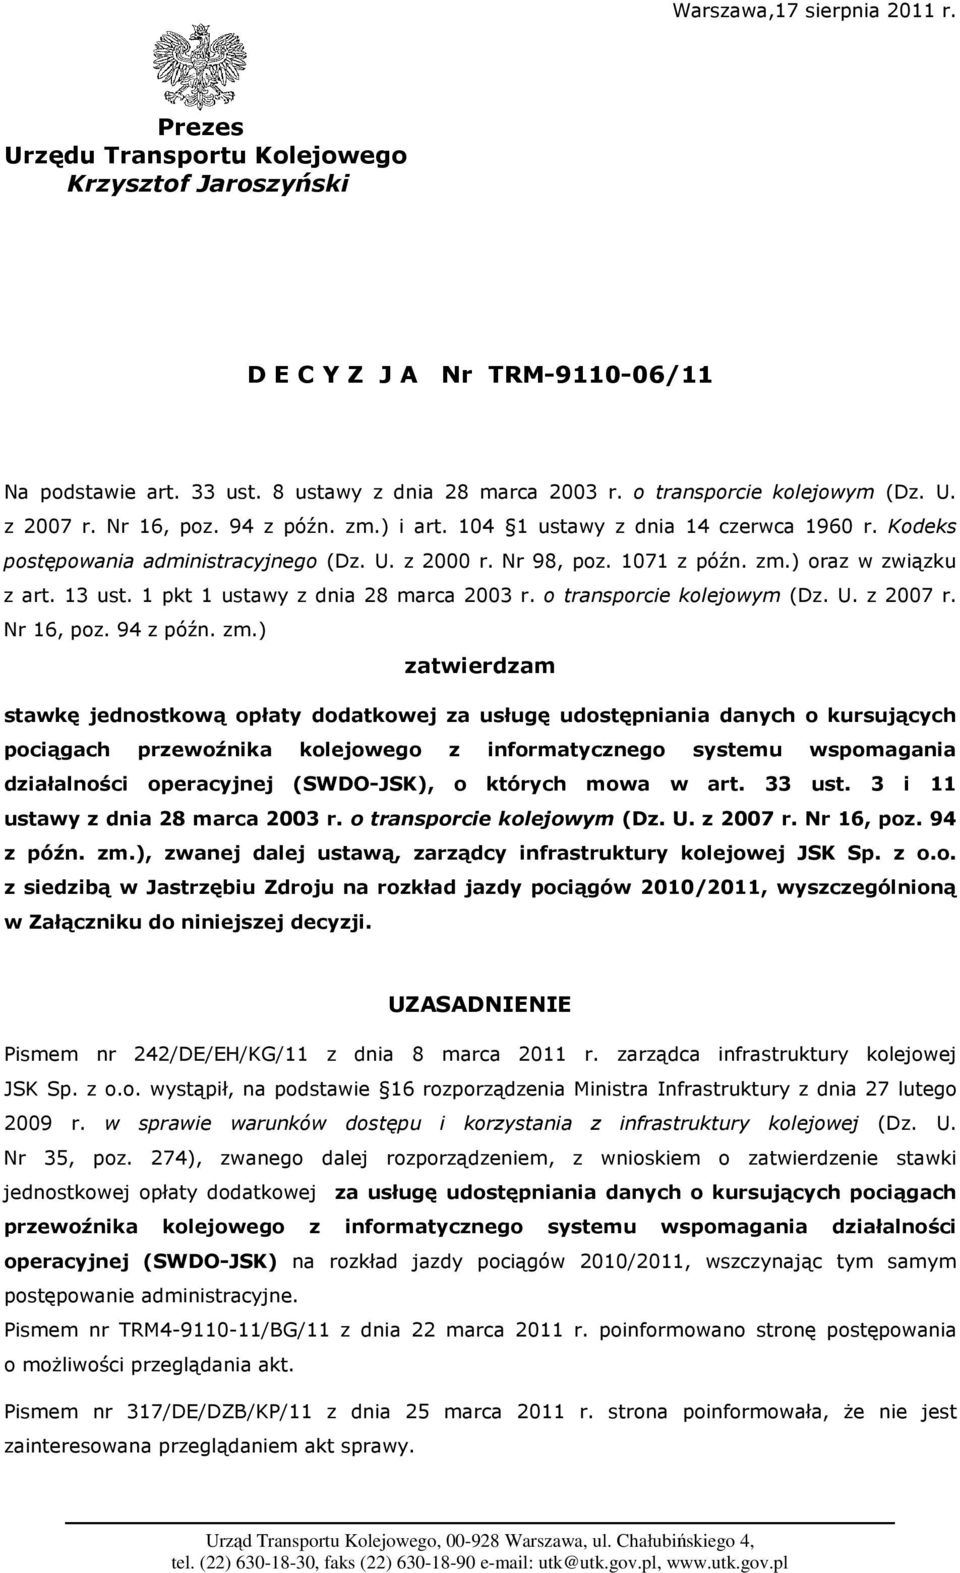 13 ust. 1 pkt 1 ustawy z dnia 28 marca 2003 r. o transporcie kolejowym (Dz. U. z 2007 r. Nr 16, poz. 94 z późn. zm.